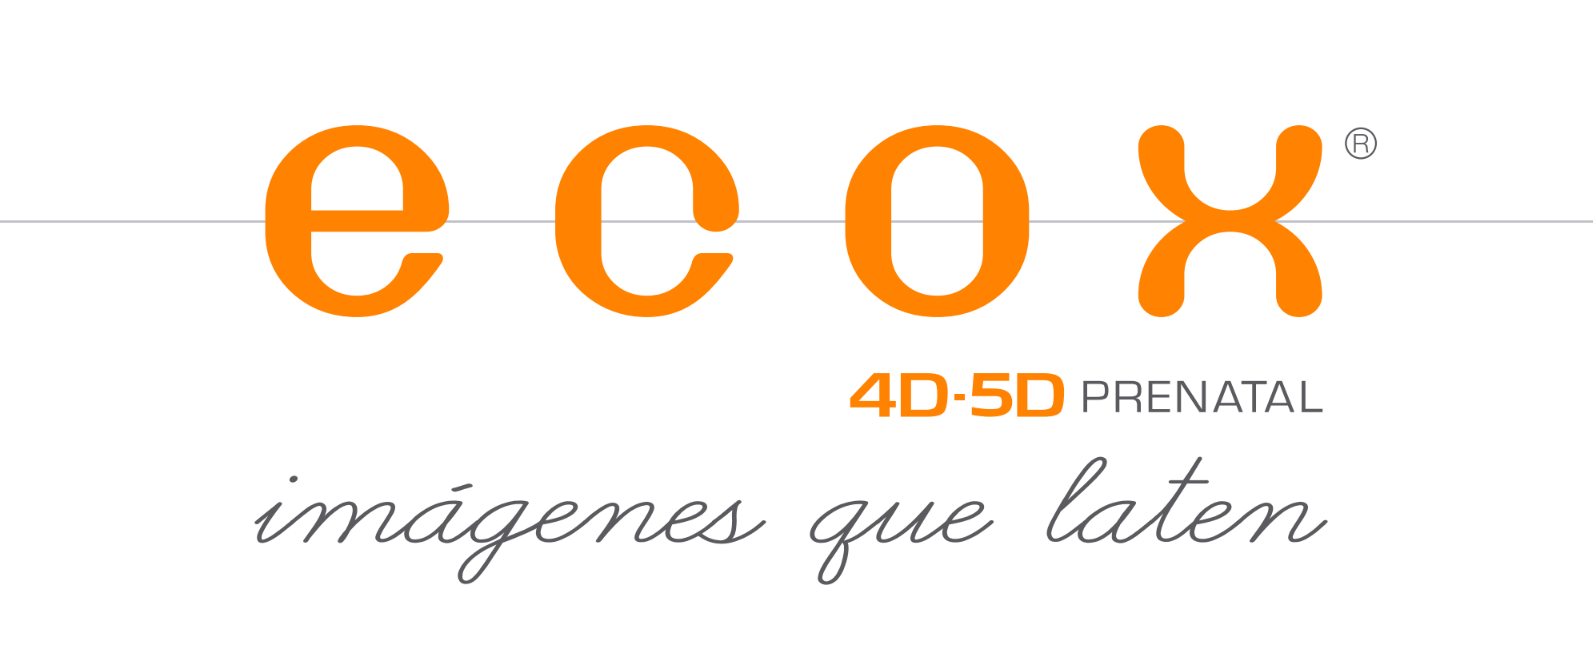 Ecox4D-5D Centro de Imagen Prenatal